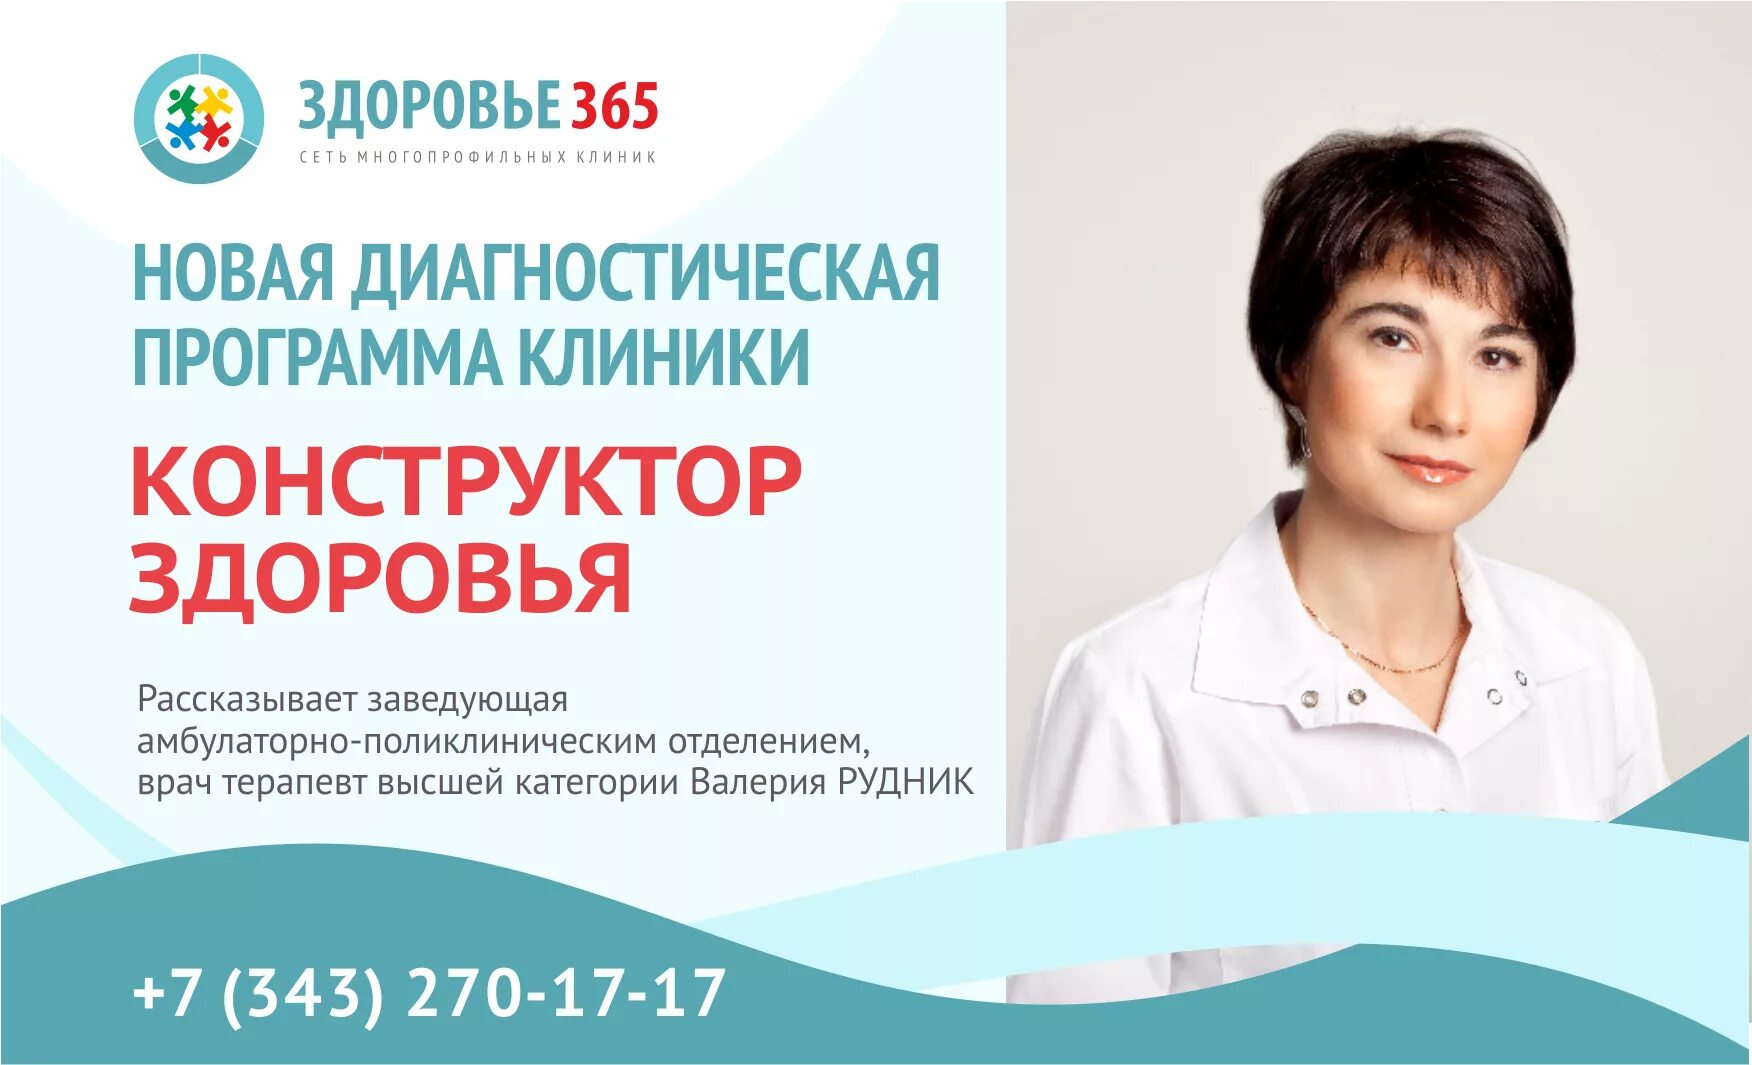 Сайт центра здоровье новомосковск. Клиника здоровье 365 ЕКБ. Здоровье 365 реклама.